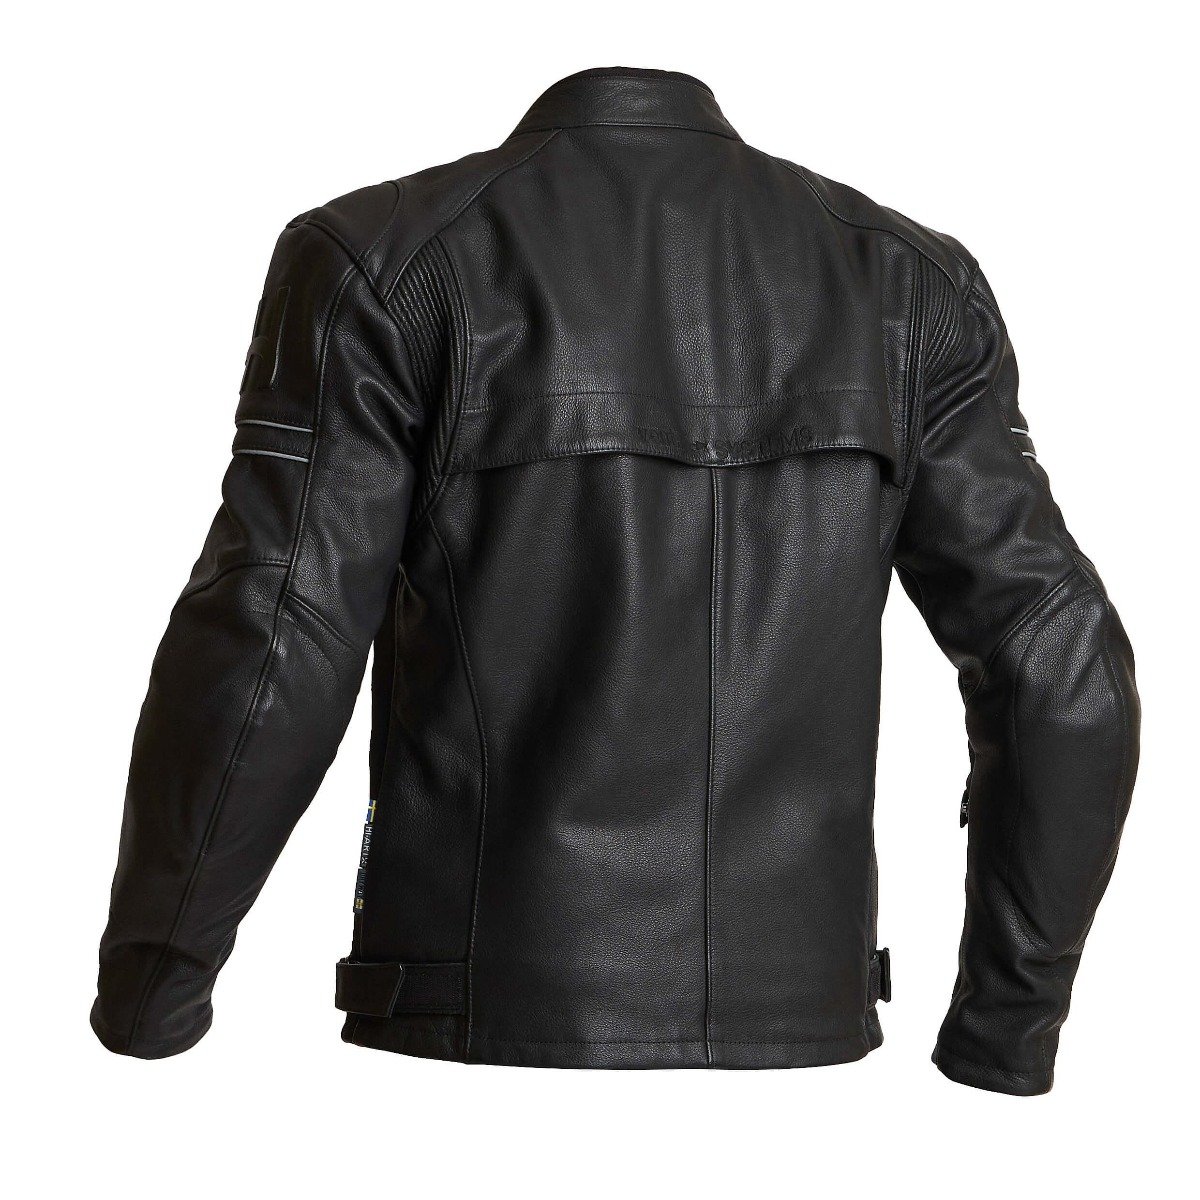 Image of Halvarssons Idre Jacket Black Size 52 EN